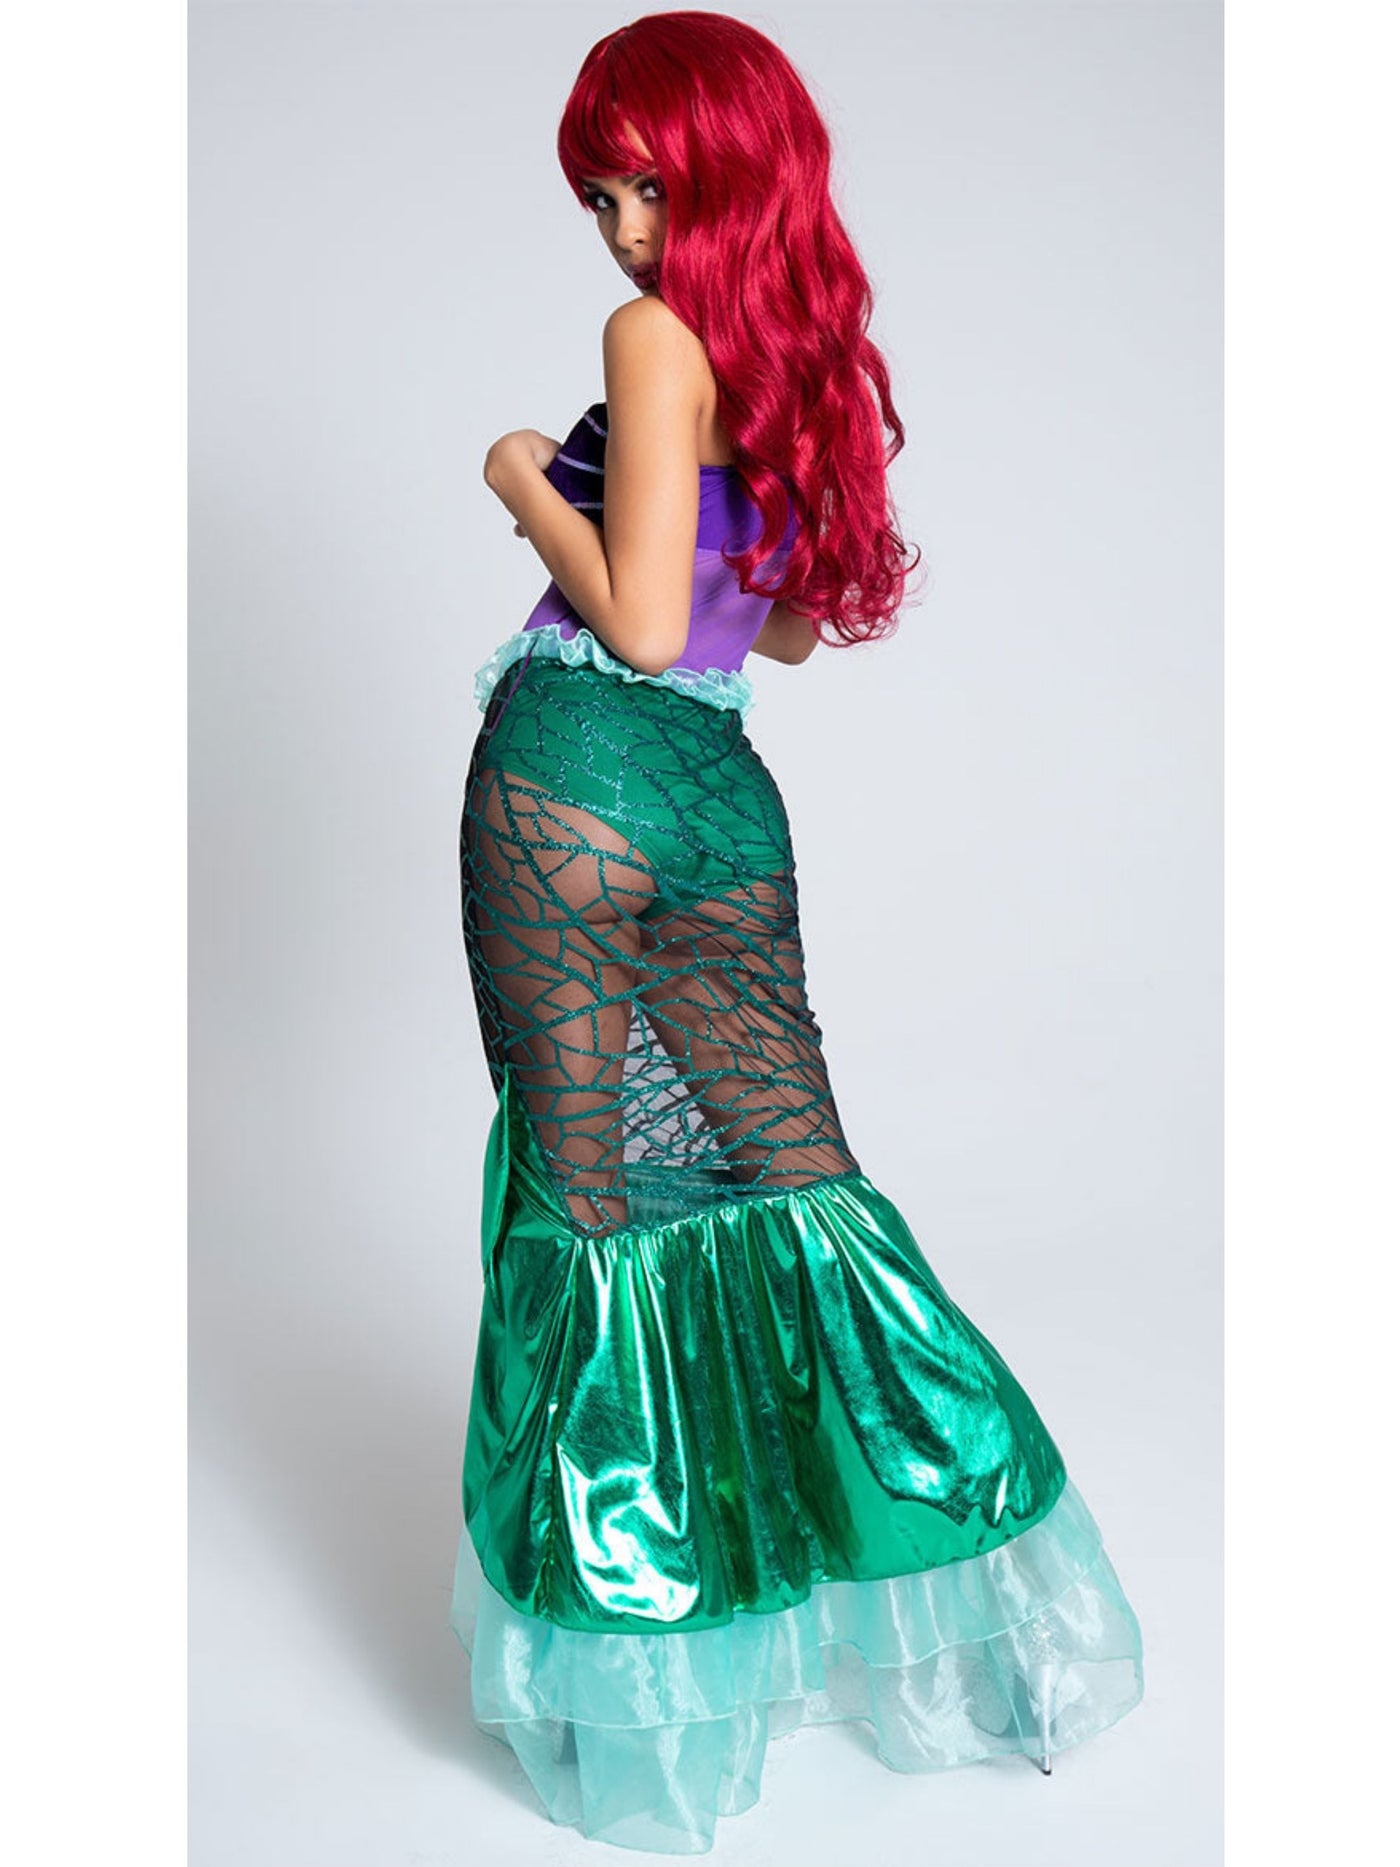 Under The Sea Sheer Ariel Deluxe Mermaid Costume